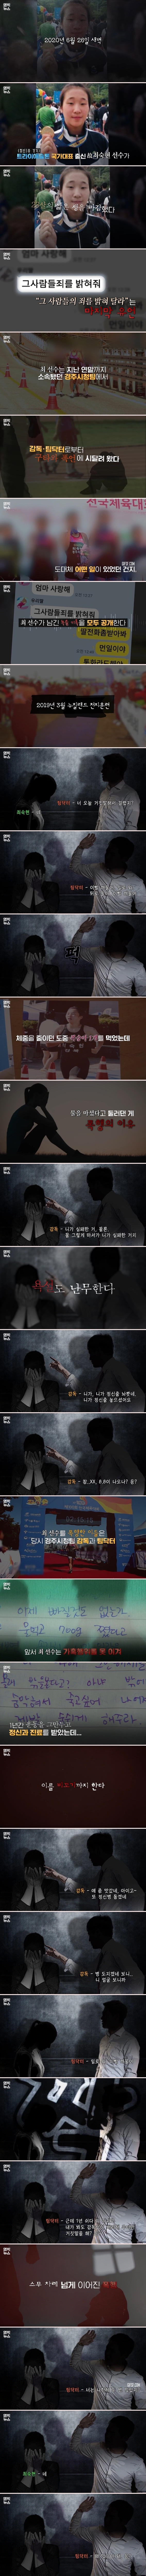 23살 철인3종 유망주 高최숙현 선수의 녹취 파일 공개 (1).jpg